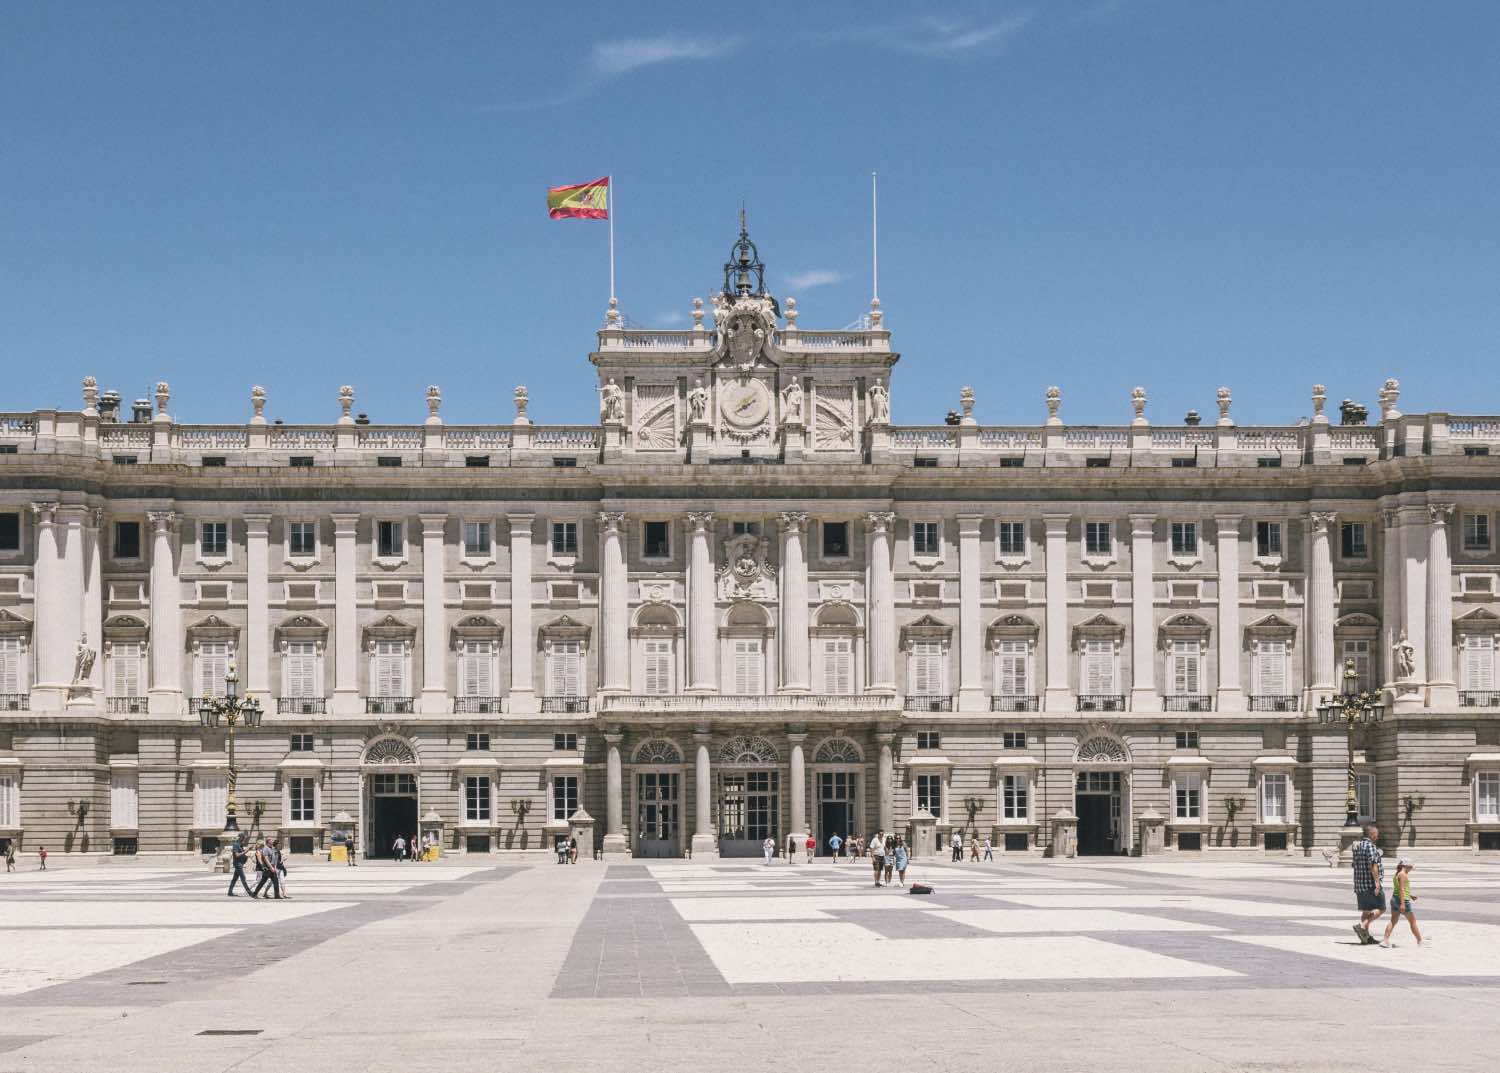 arquitectura barroca, palacio real de madrid